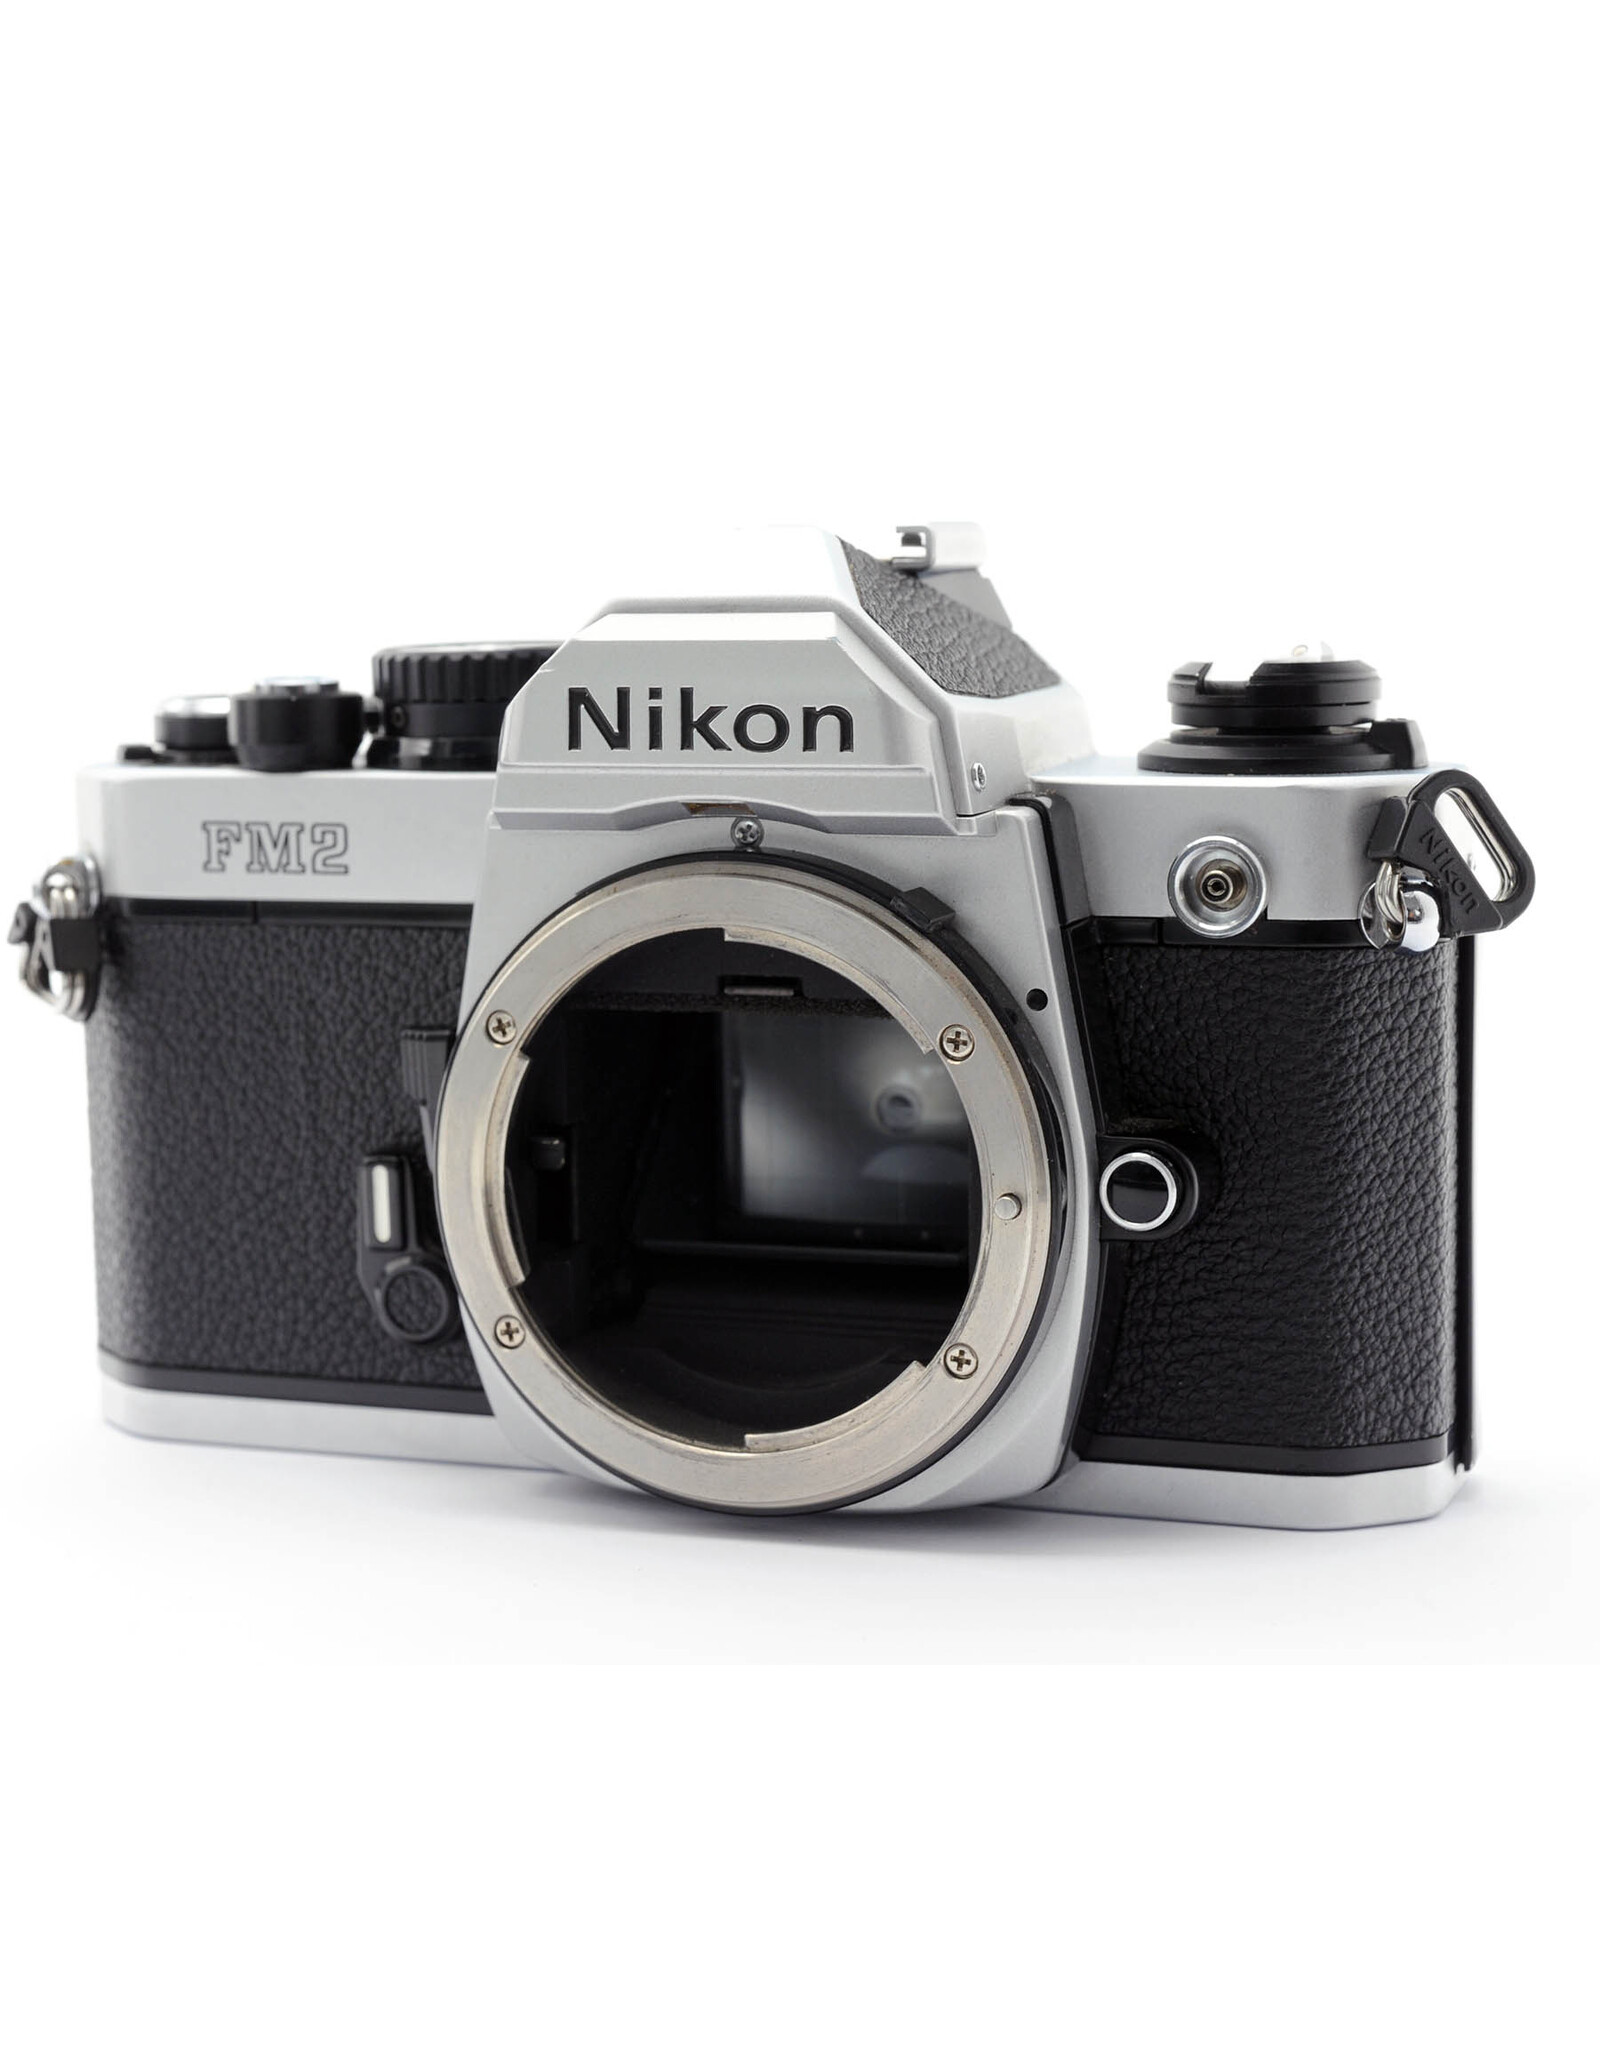 Nikon Nikon FM2n Chrome   A4032301